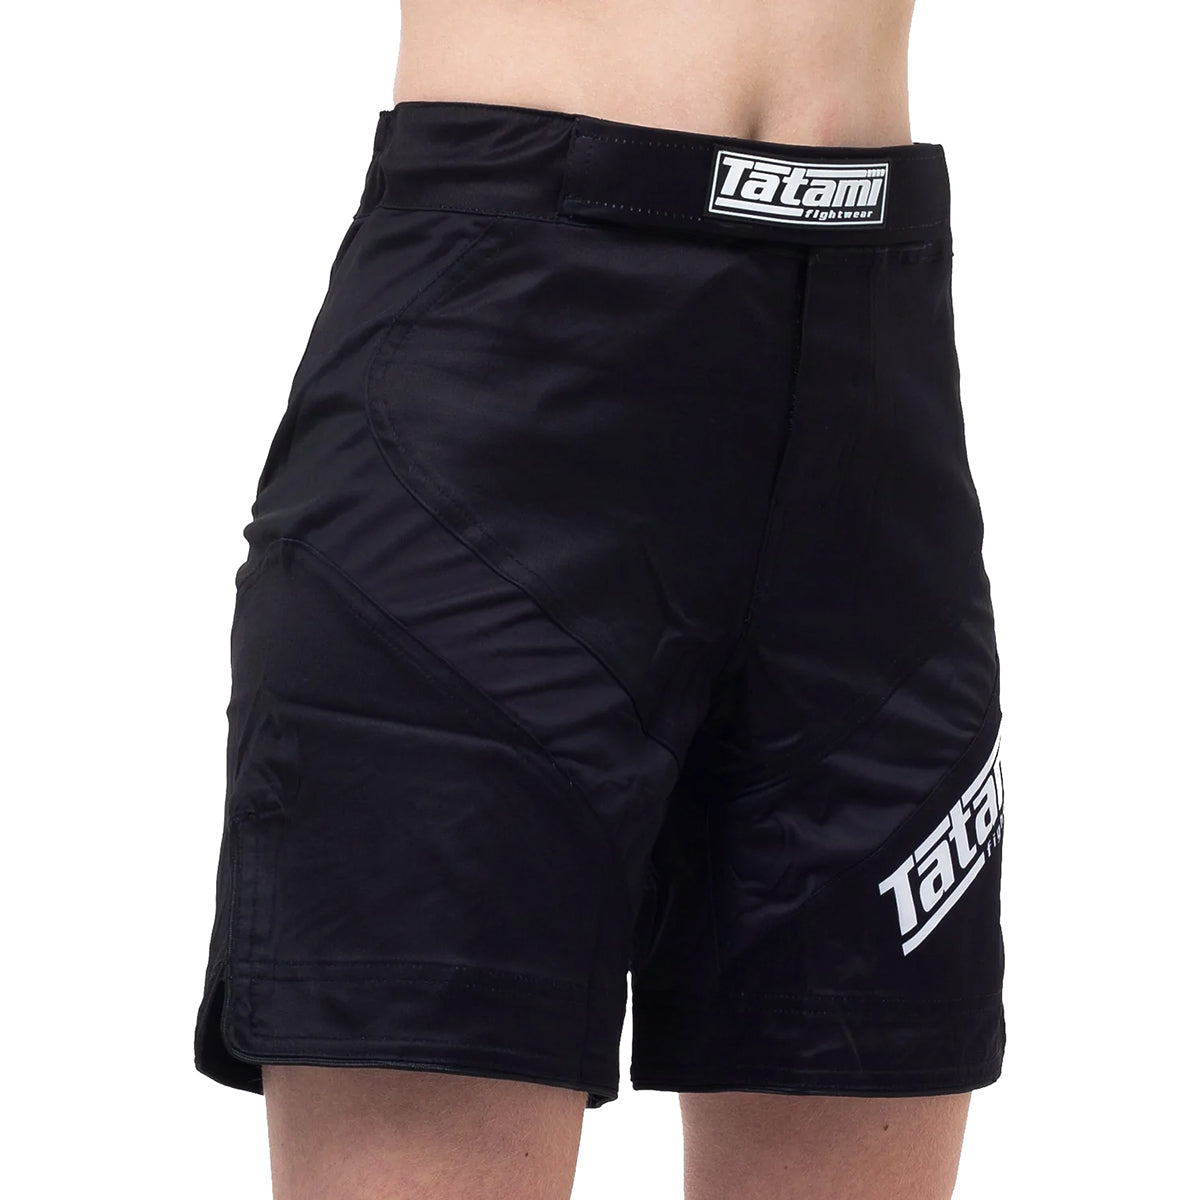 Tatami Fightwear Women's Dynamic Fit IBJJF Fight Shorts - Black Tatami Fightwear